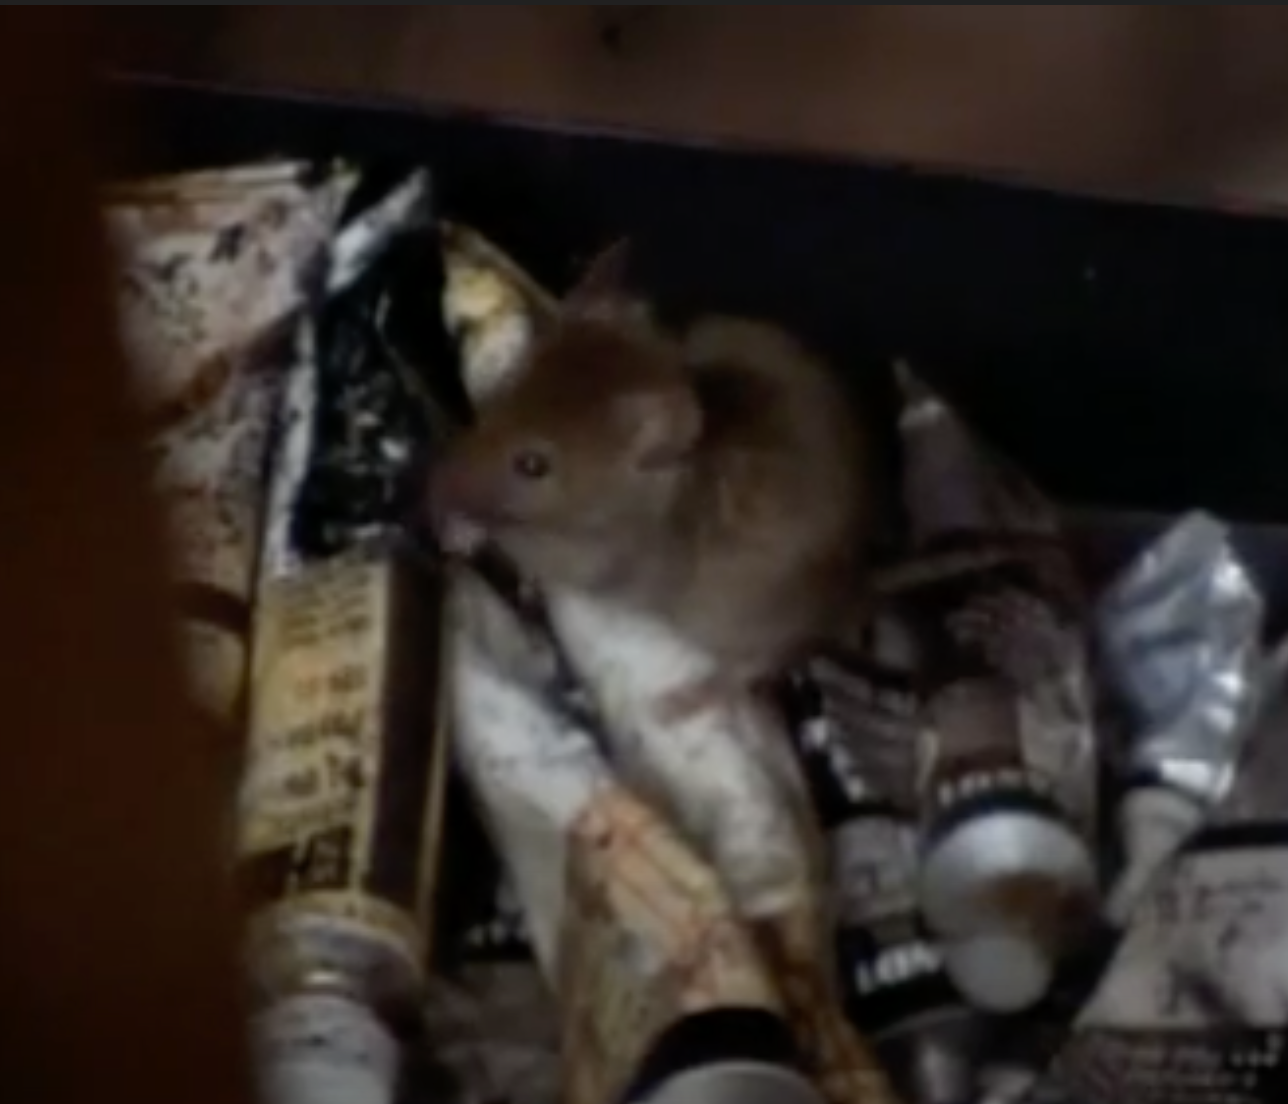 Мышь ест пигмент. Кадр из&nbsp;документального фильма «Бальтюс в&nbsp;Зазеркалье» Д. Петтигрю (BAAL Films, 1996)